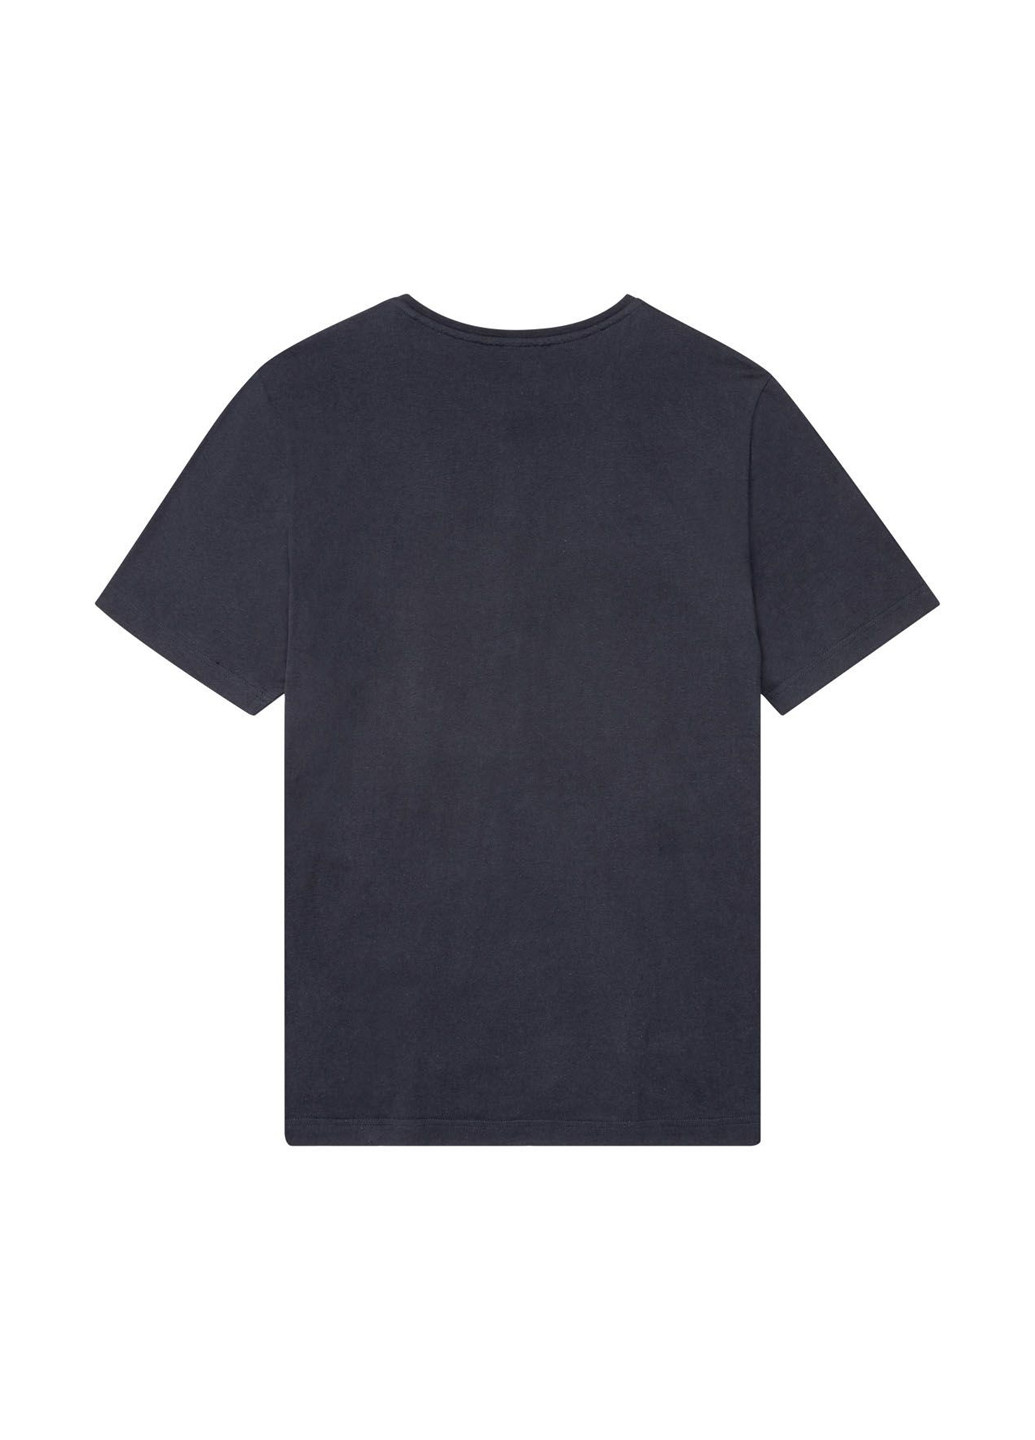 Піжама (футболка, шорти) Livergy футболка + шорти клітинка комбінована домашня трикотаж, бавовна